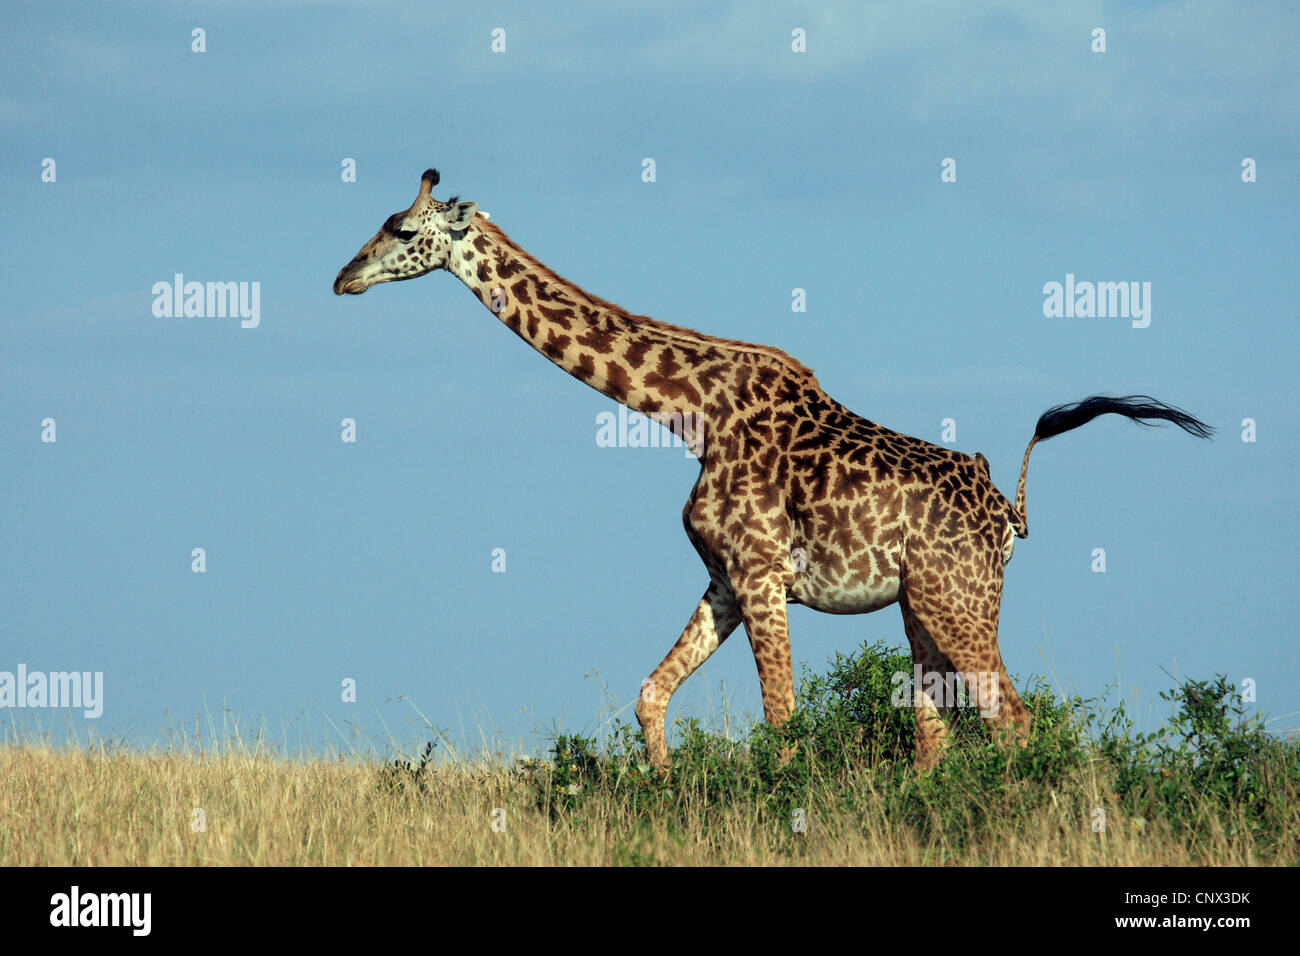 Jirafa (Giraffa camelopardalis), caminando sobre hierba seca en la sabana, Kenia, Masai Mara National Park Foto de stock